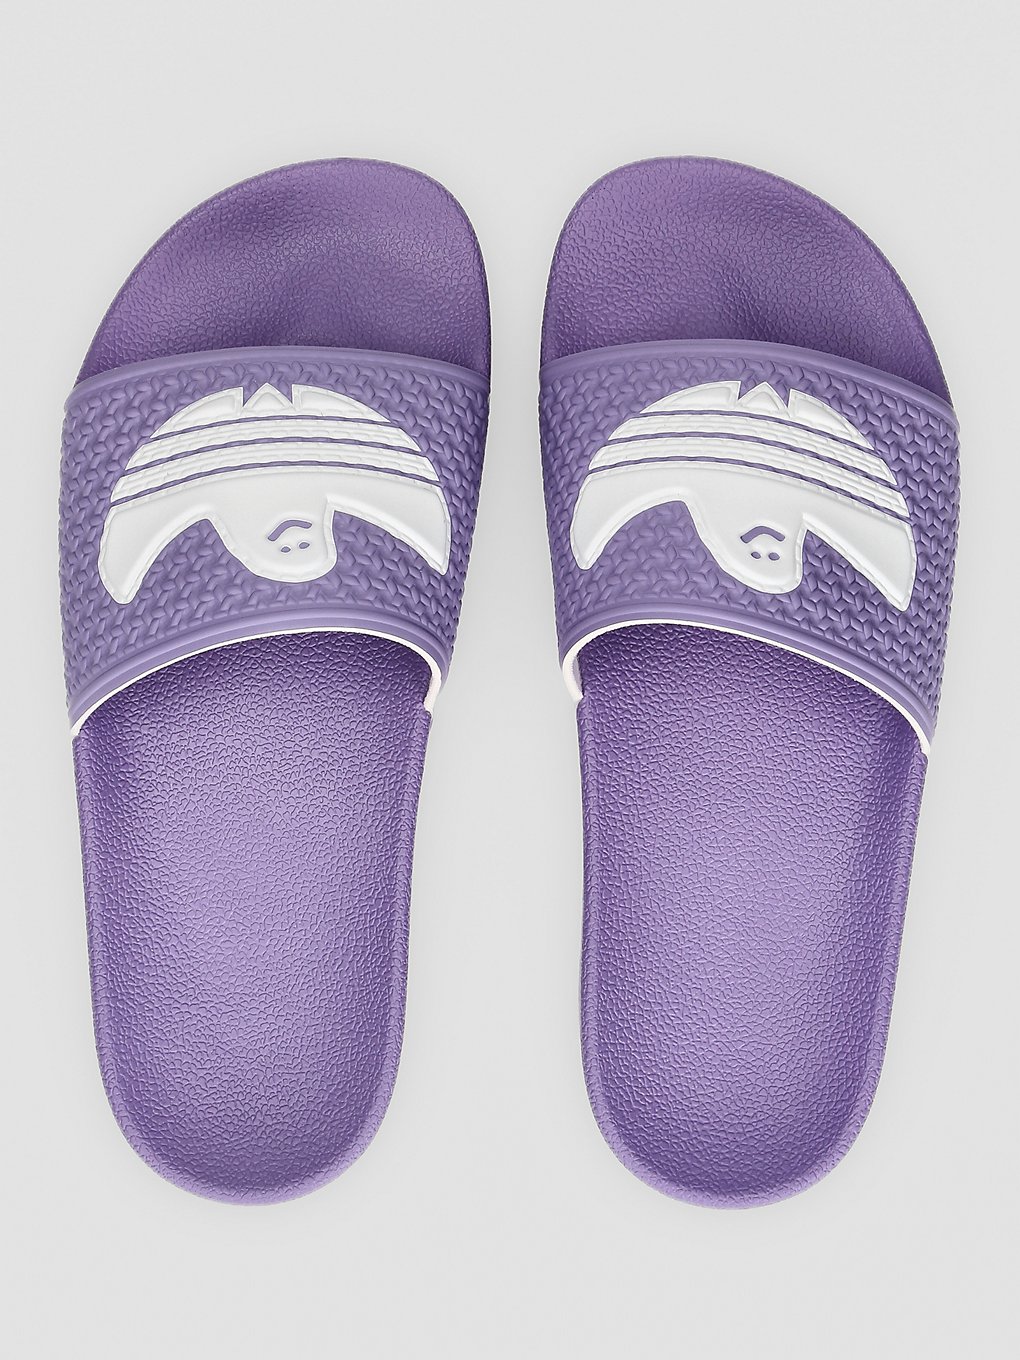 adidas Skateboarding Shmoofoil Slide Sandals violet